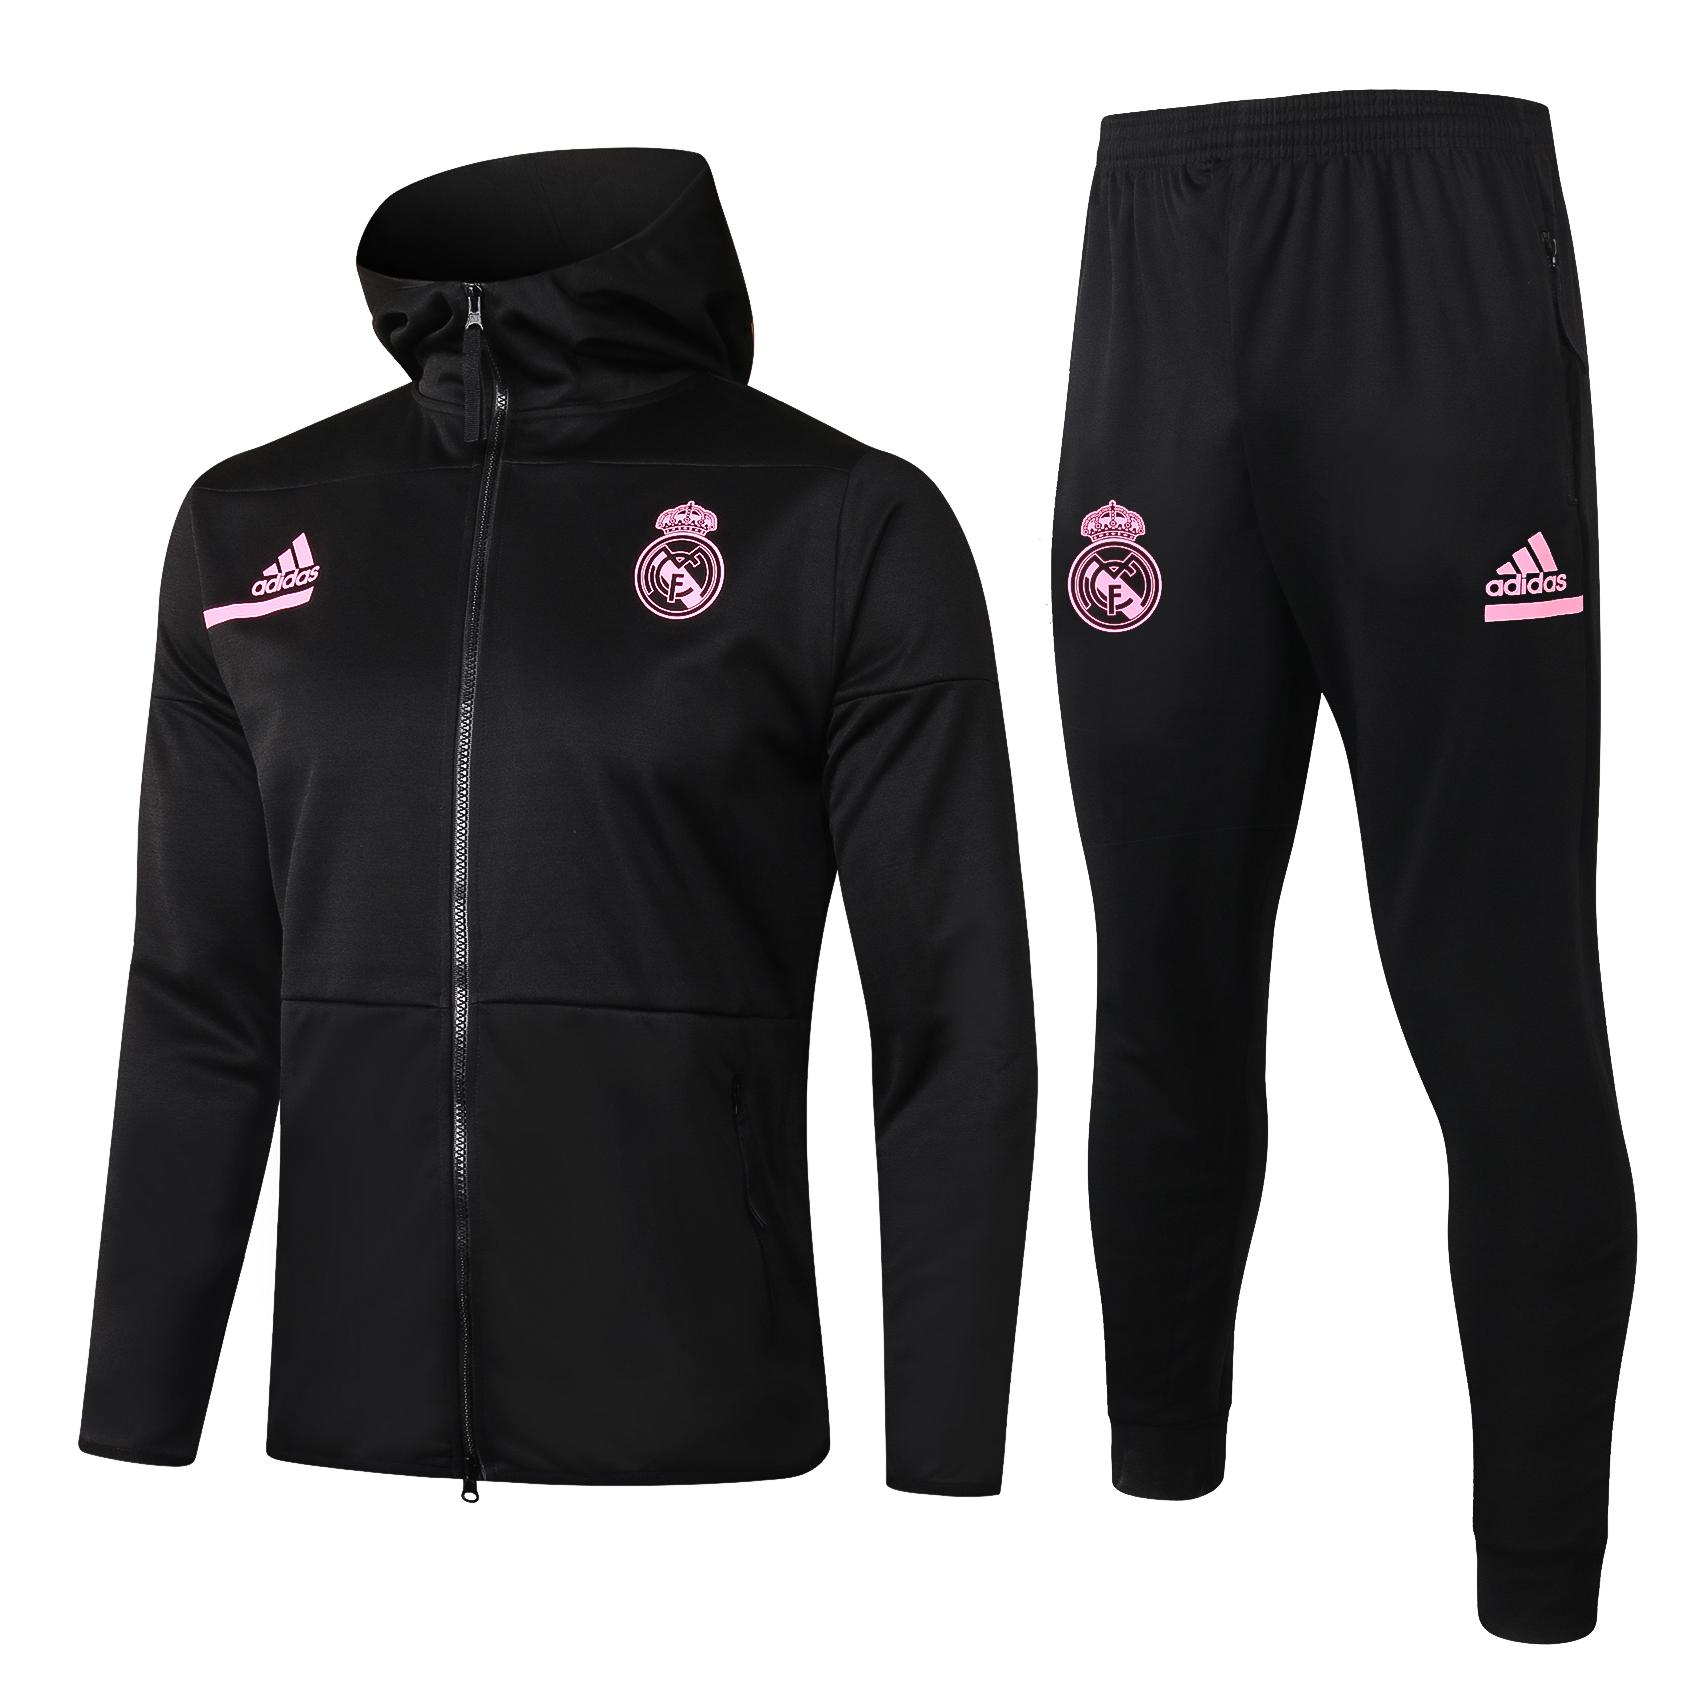 Ռեալ Մադրիդի 2020/21 սև սպորտային համազգեստ